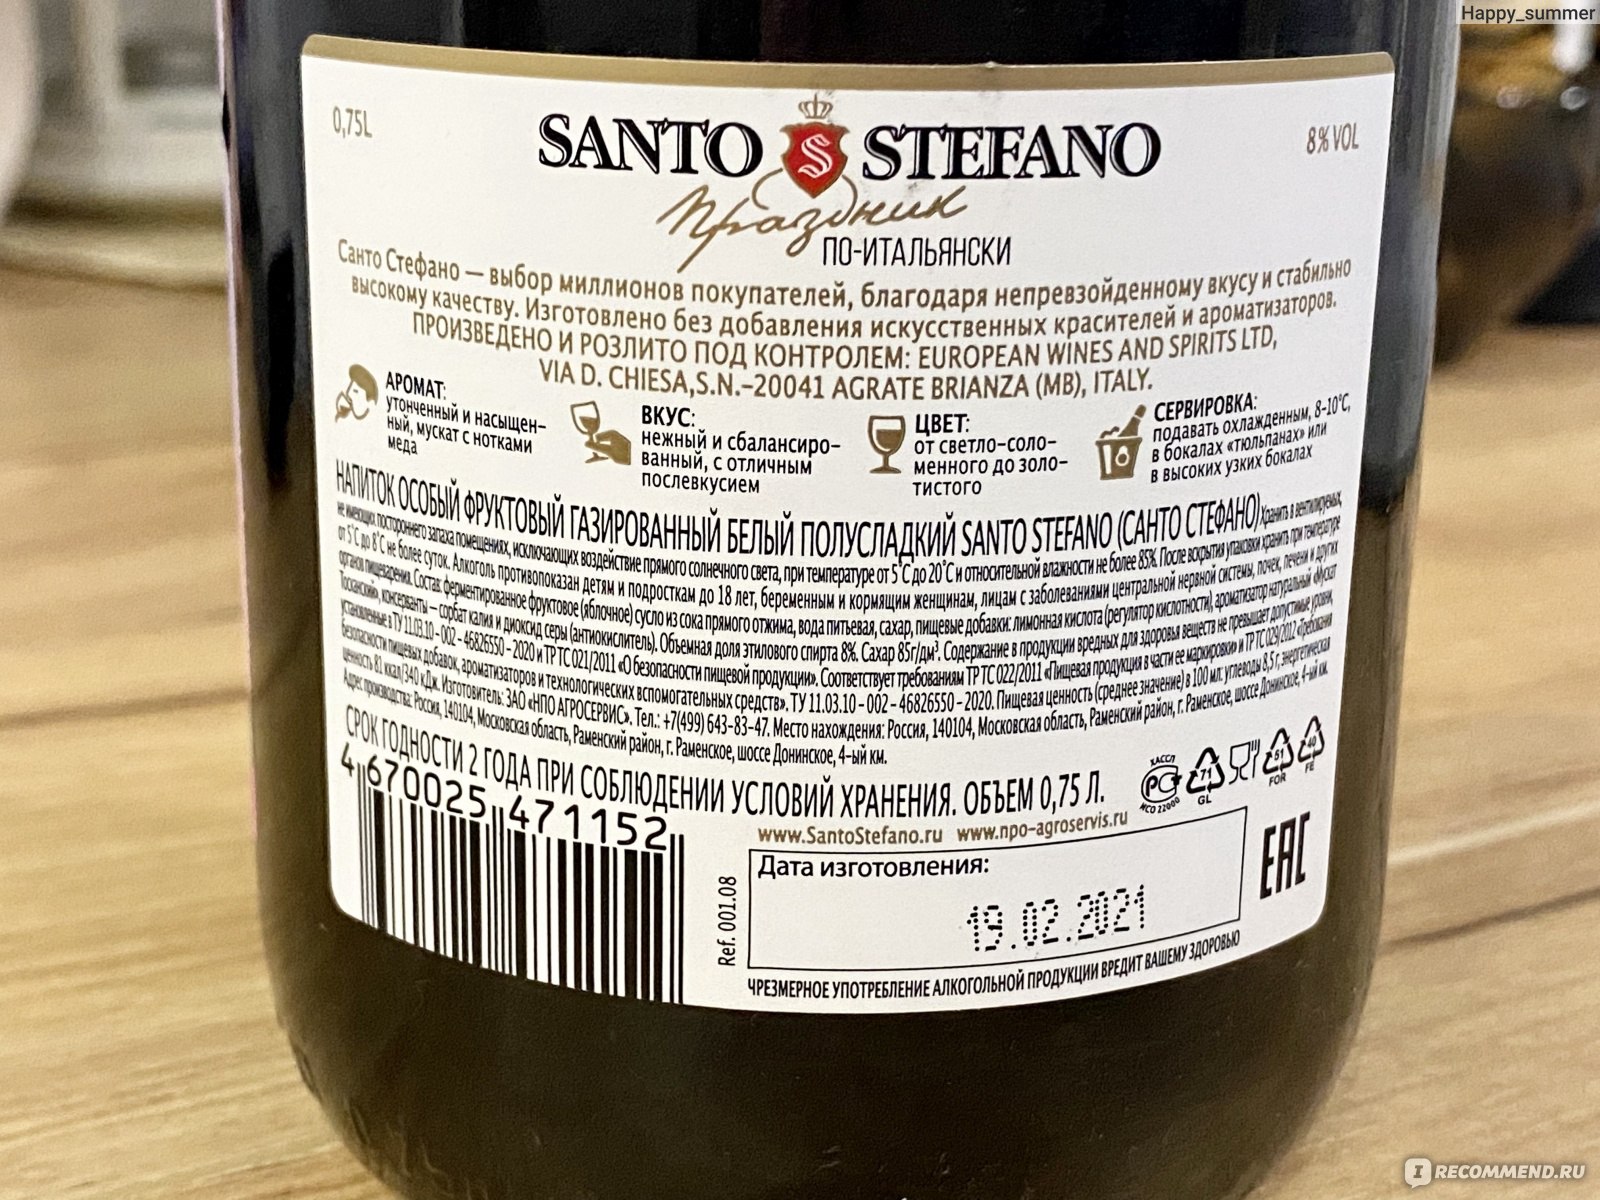 Винный напиток Санто Стефано Бьянко